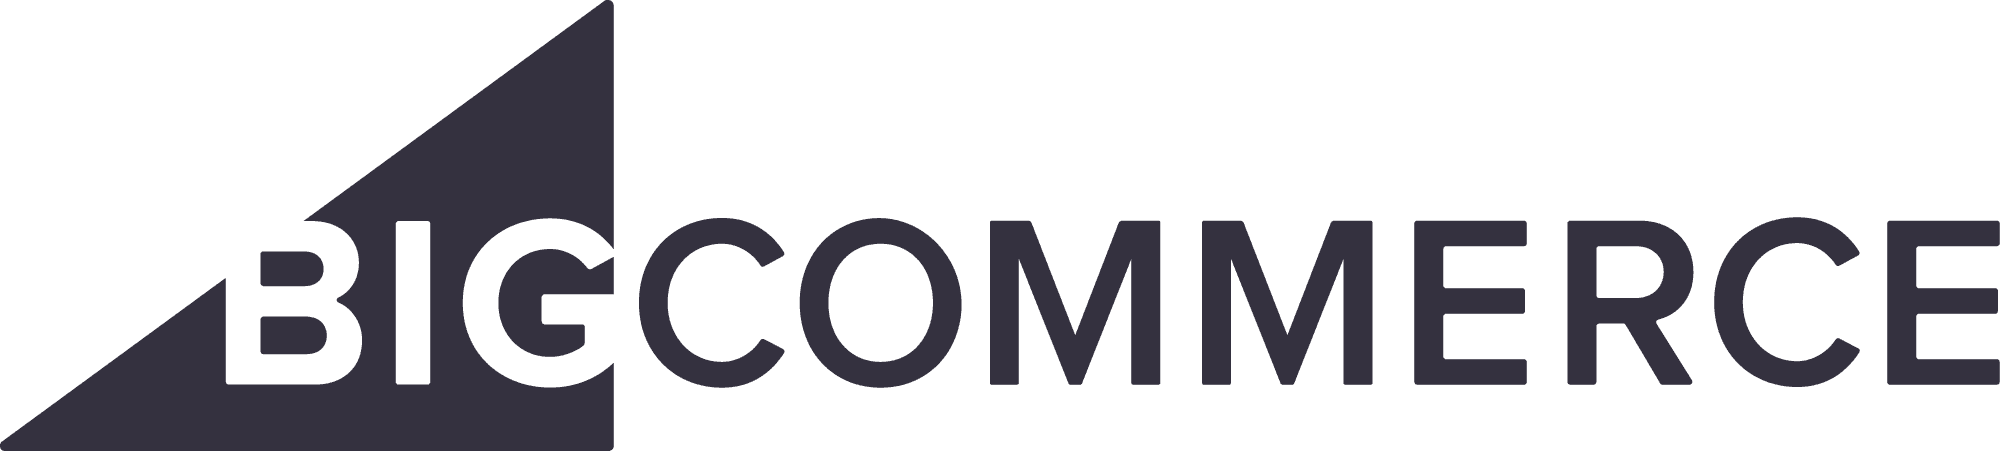 Big commerce logo